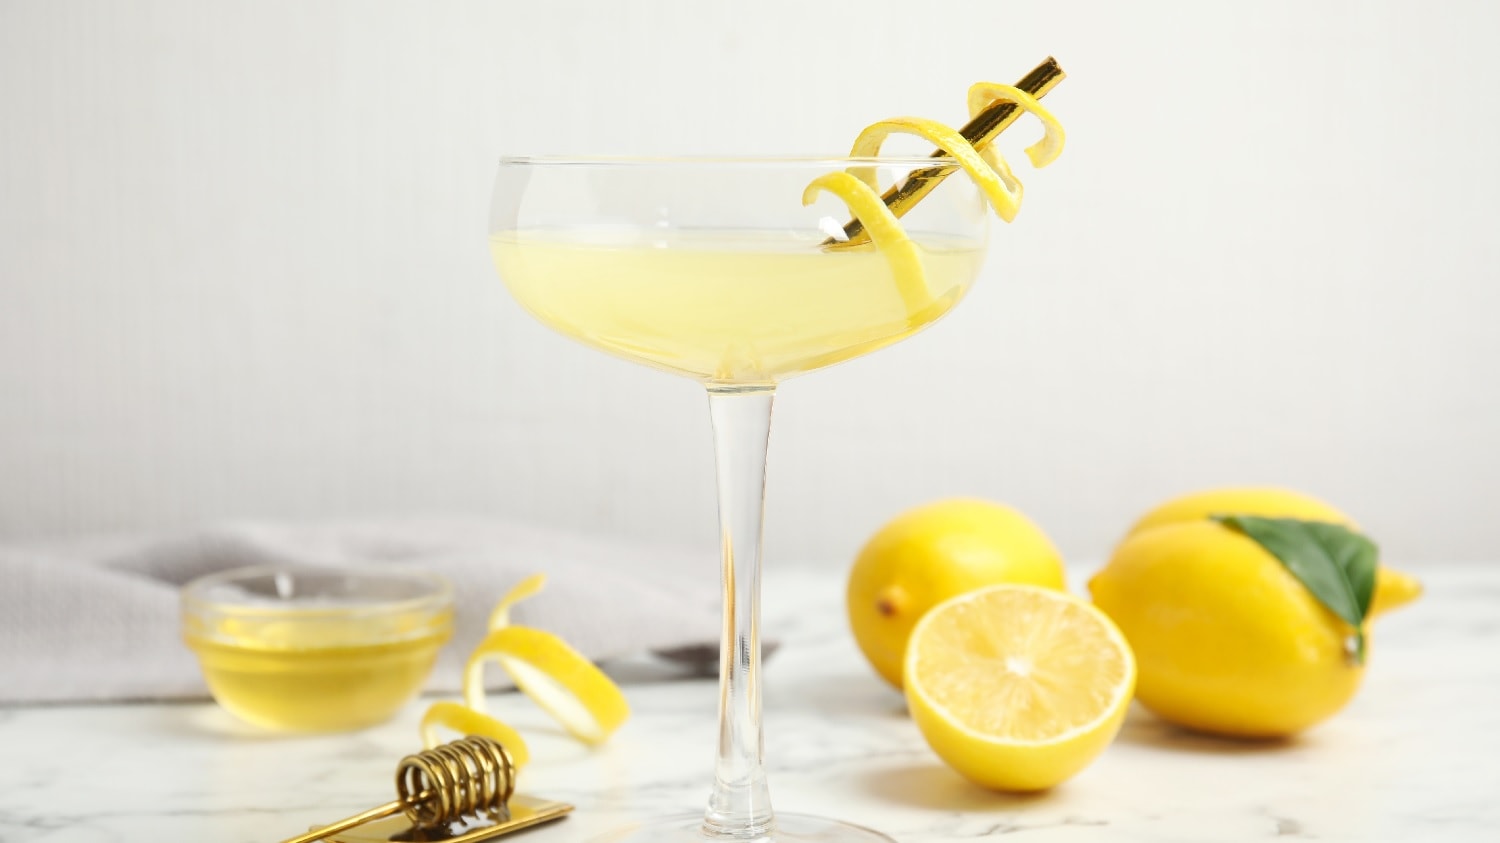 Ein Coupette-Cocktailglas mit dem gelben Drink und einer Zitronenschale. Am hellen Boden sind halbierte Zitronen und ein kleines Glas mit Honig.